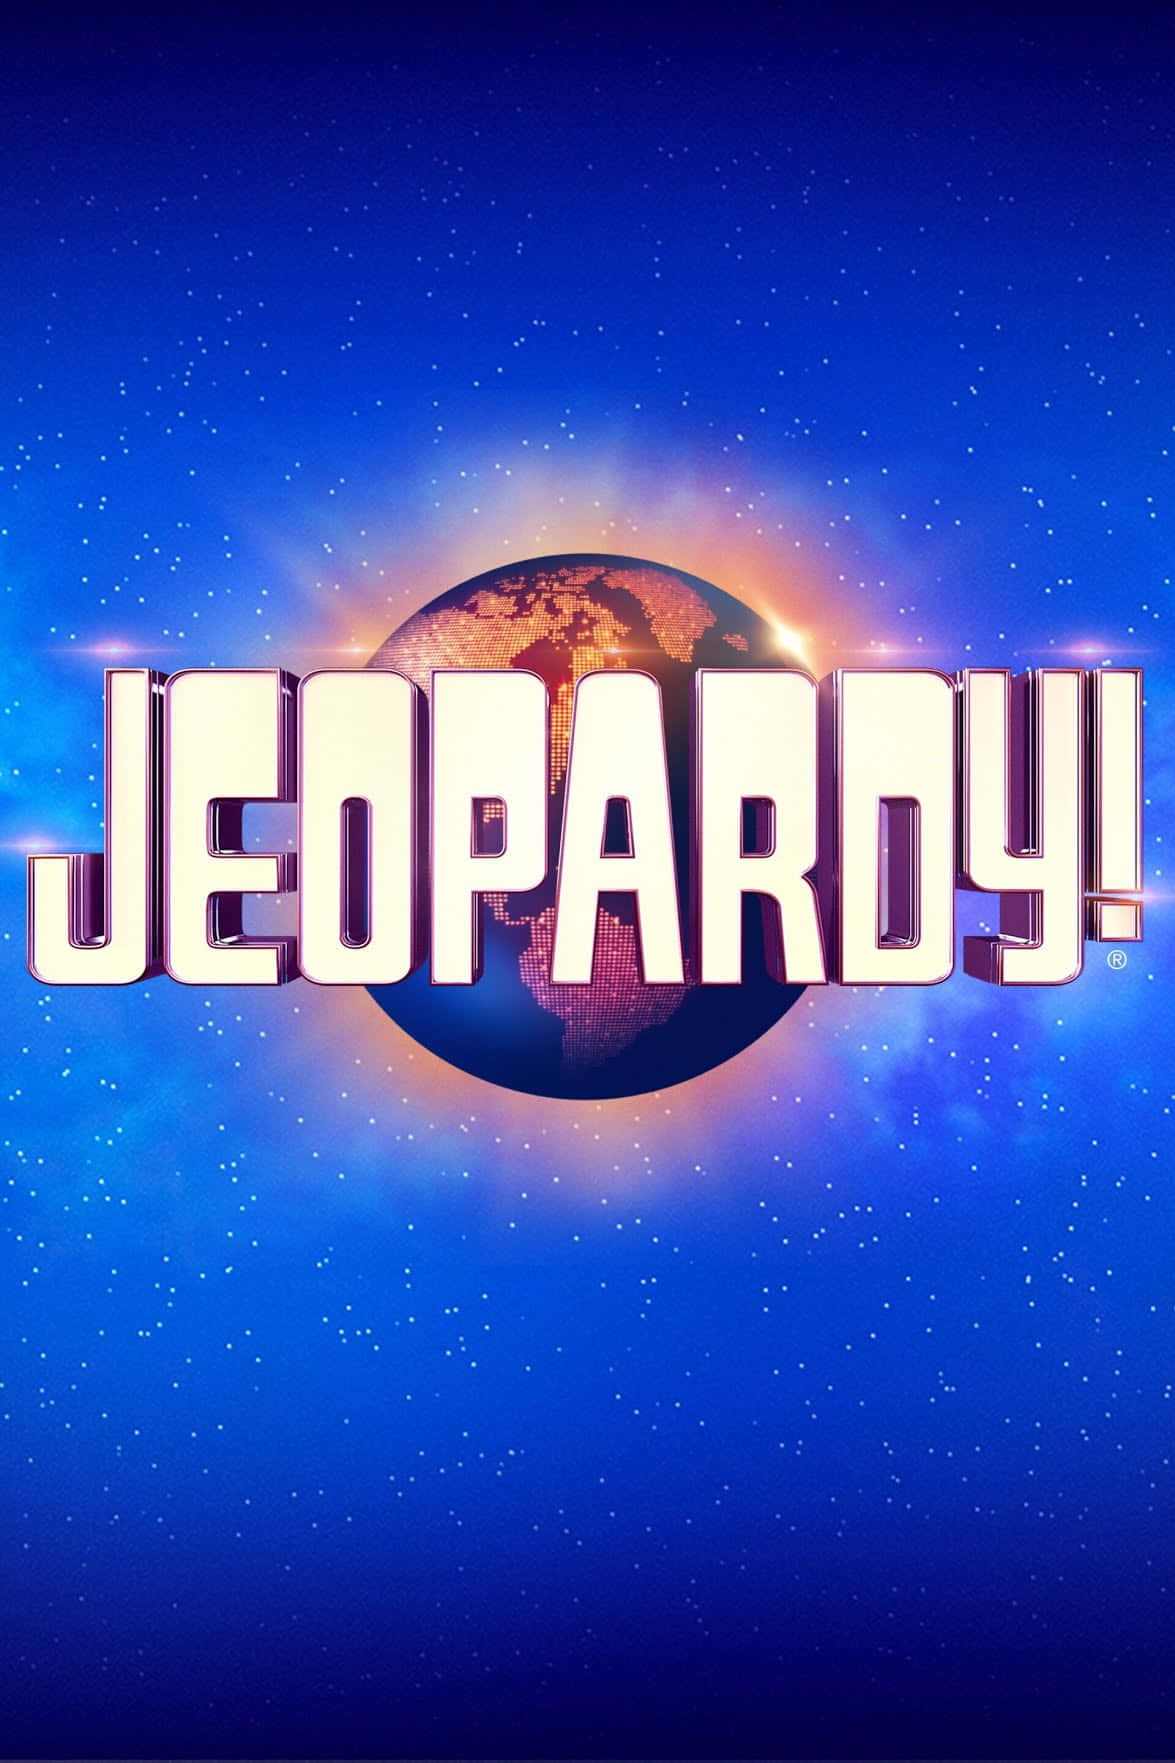 Logode Jeopardy Con Un Fondo Azul.